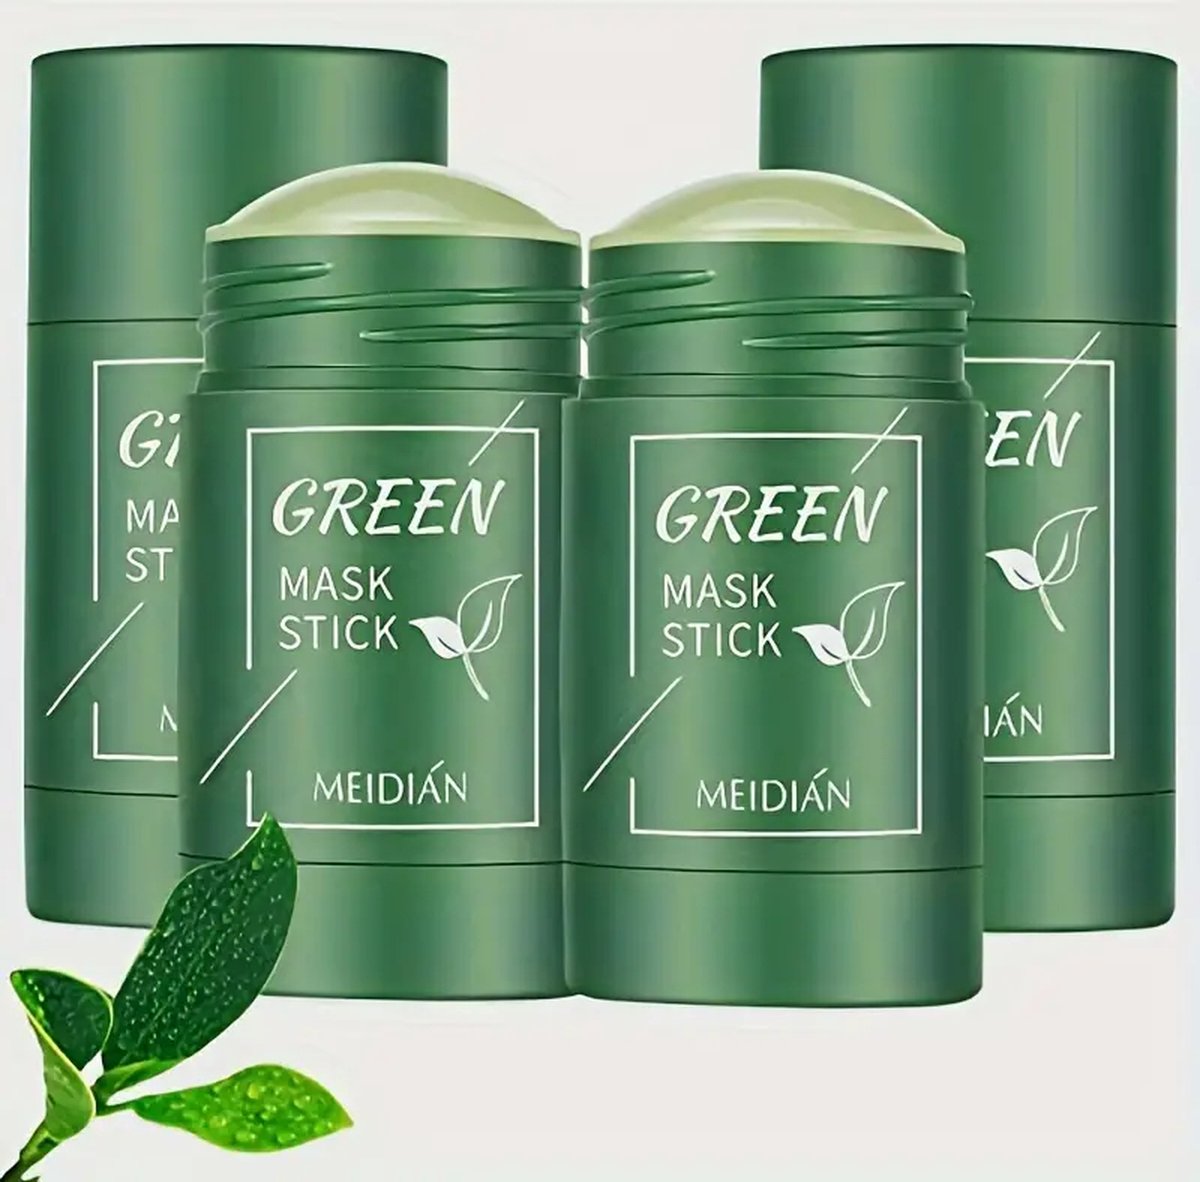 Ned products Green Mask Stick - Gezichtsmasker - Blackhead Remover - Huidverzorging - Mee Eters Verwijderen - Groene thee - 2 Stuks